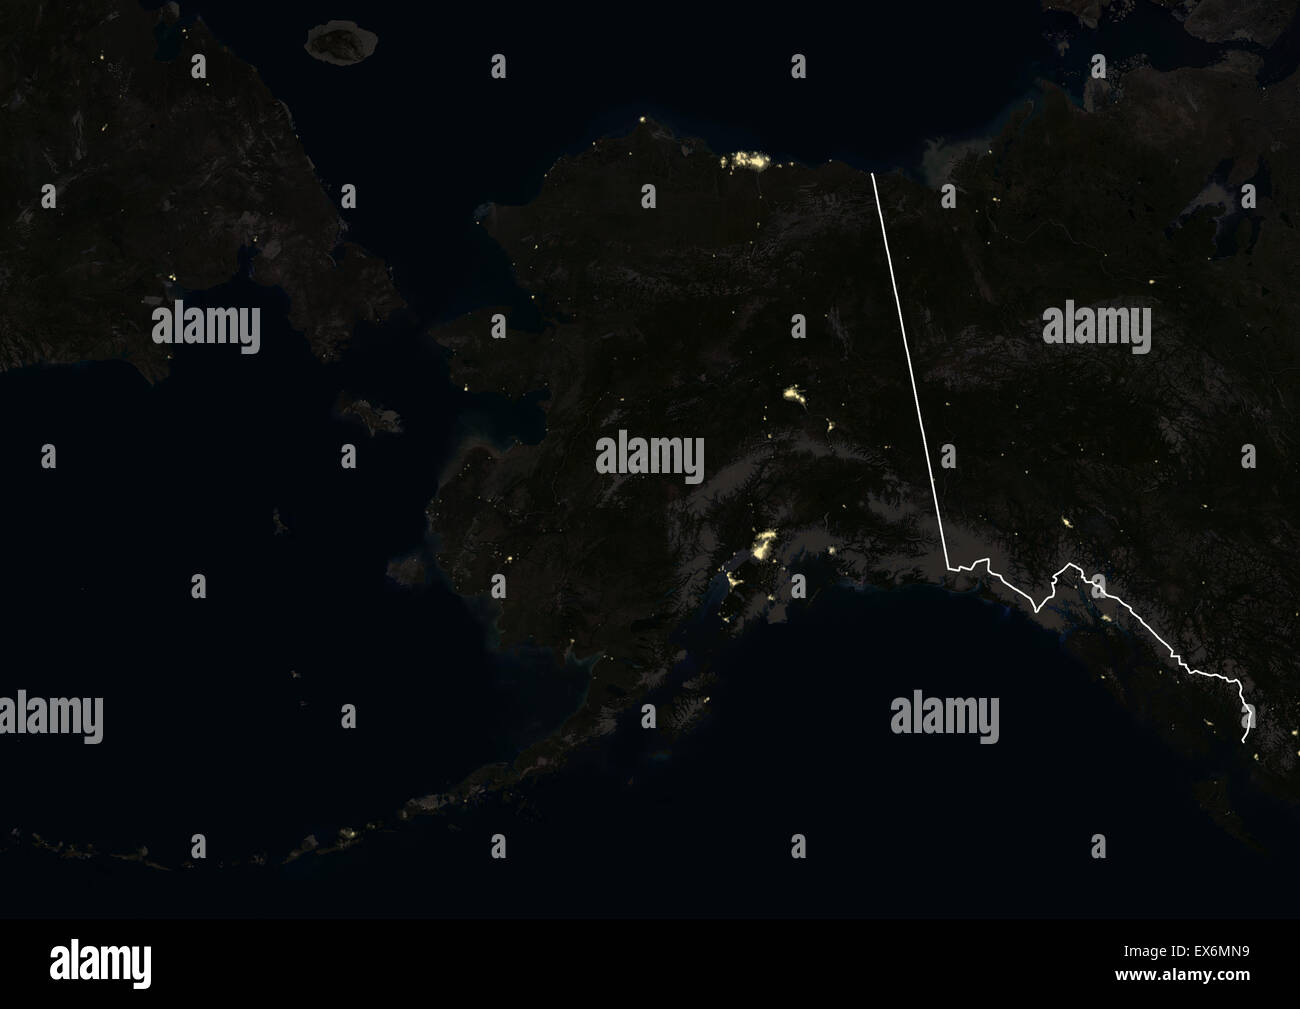 Alaska, EE.UU. por la noche en 2012. Esta imagen de satélite con las fronteras del país muestra las luces urbanas e industriales. Foto de stock